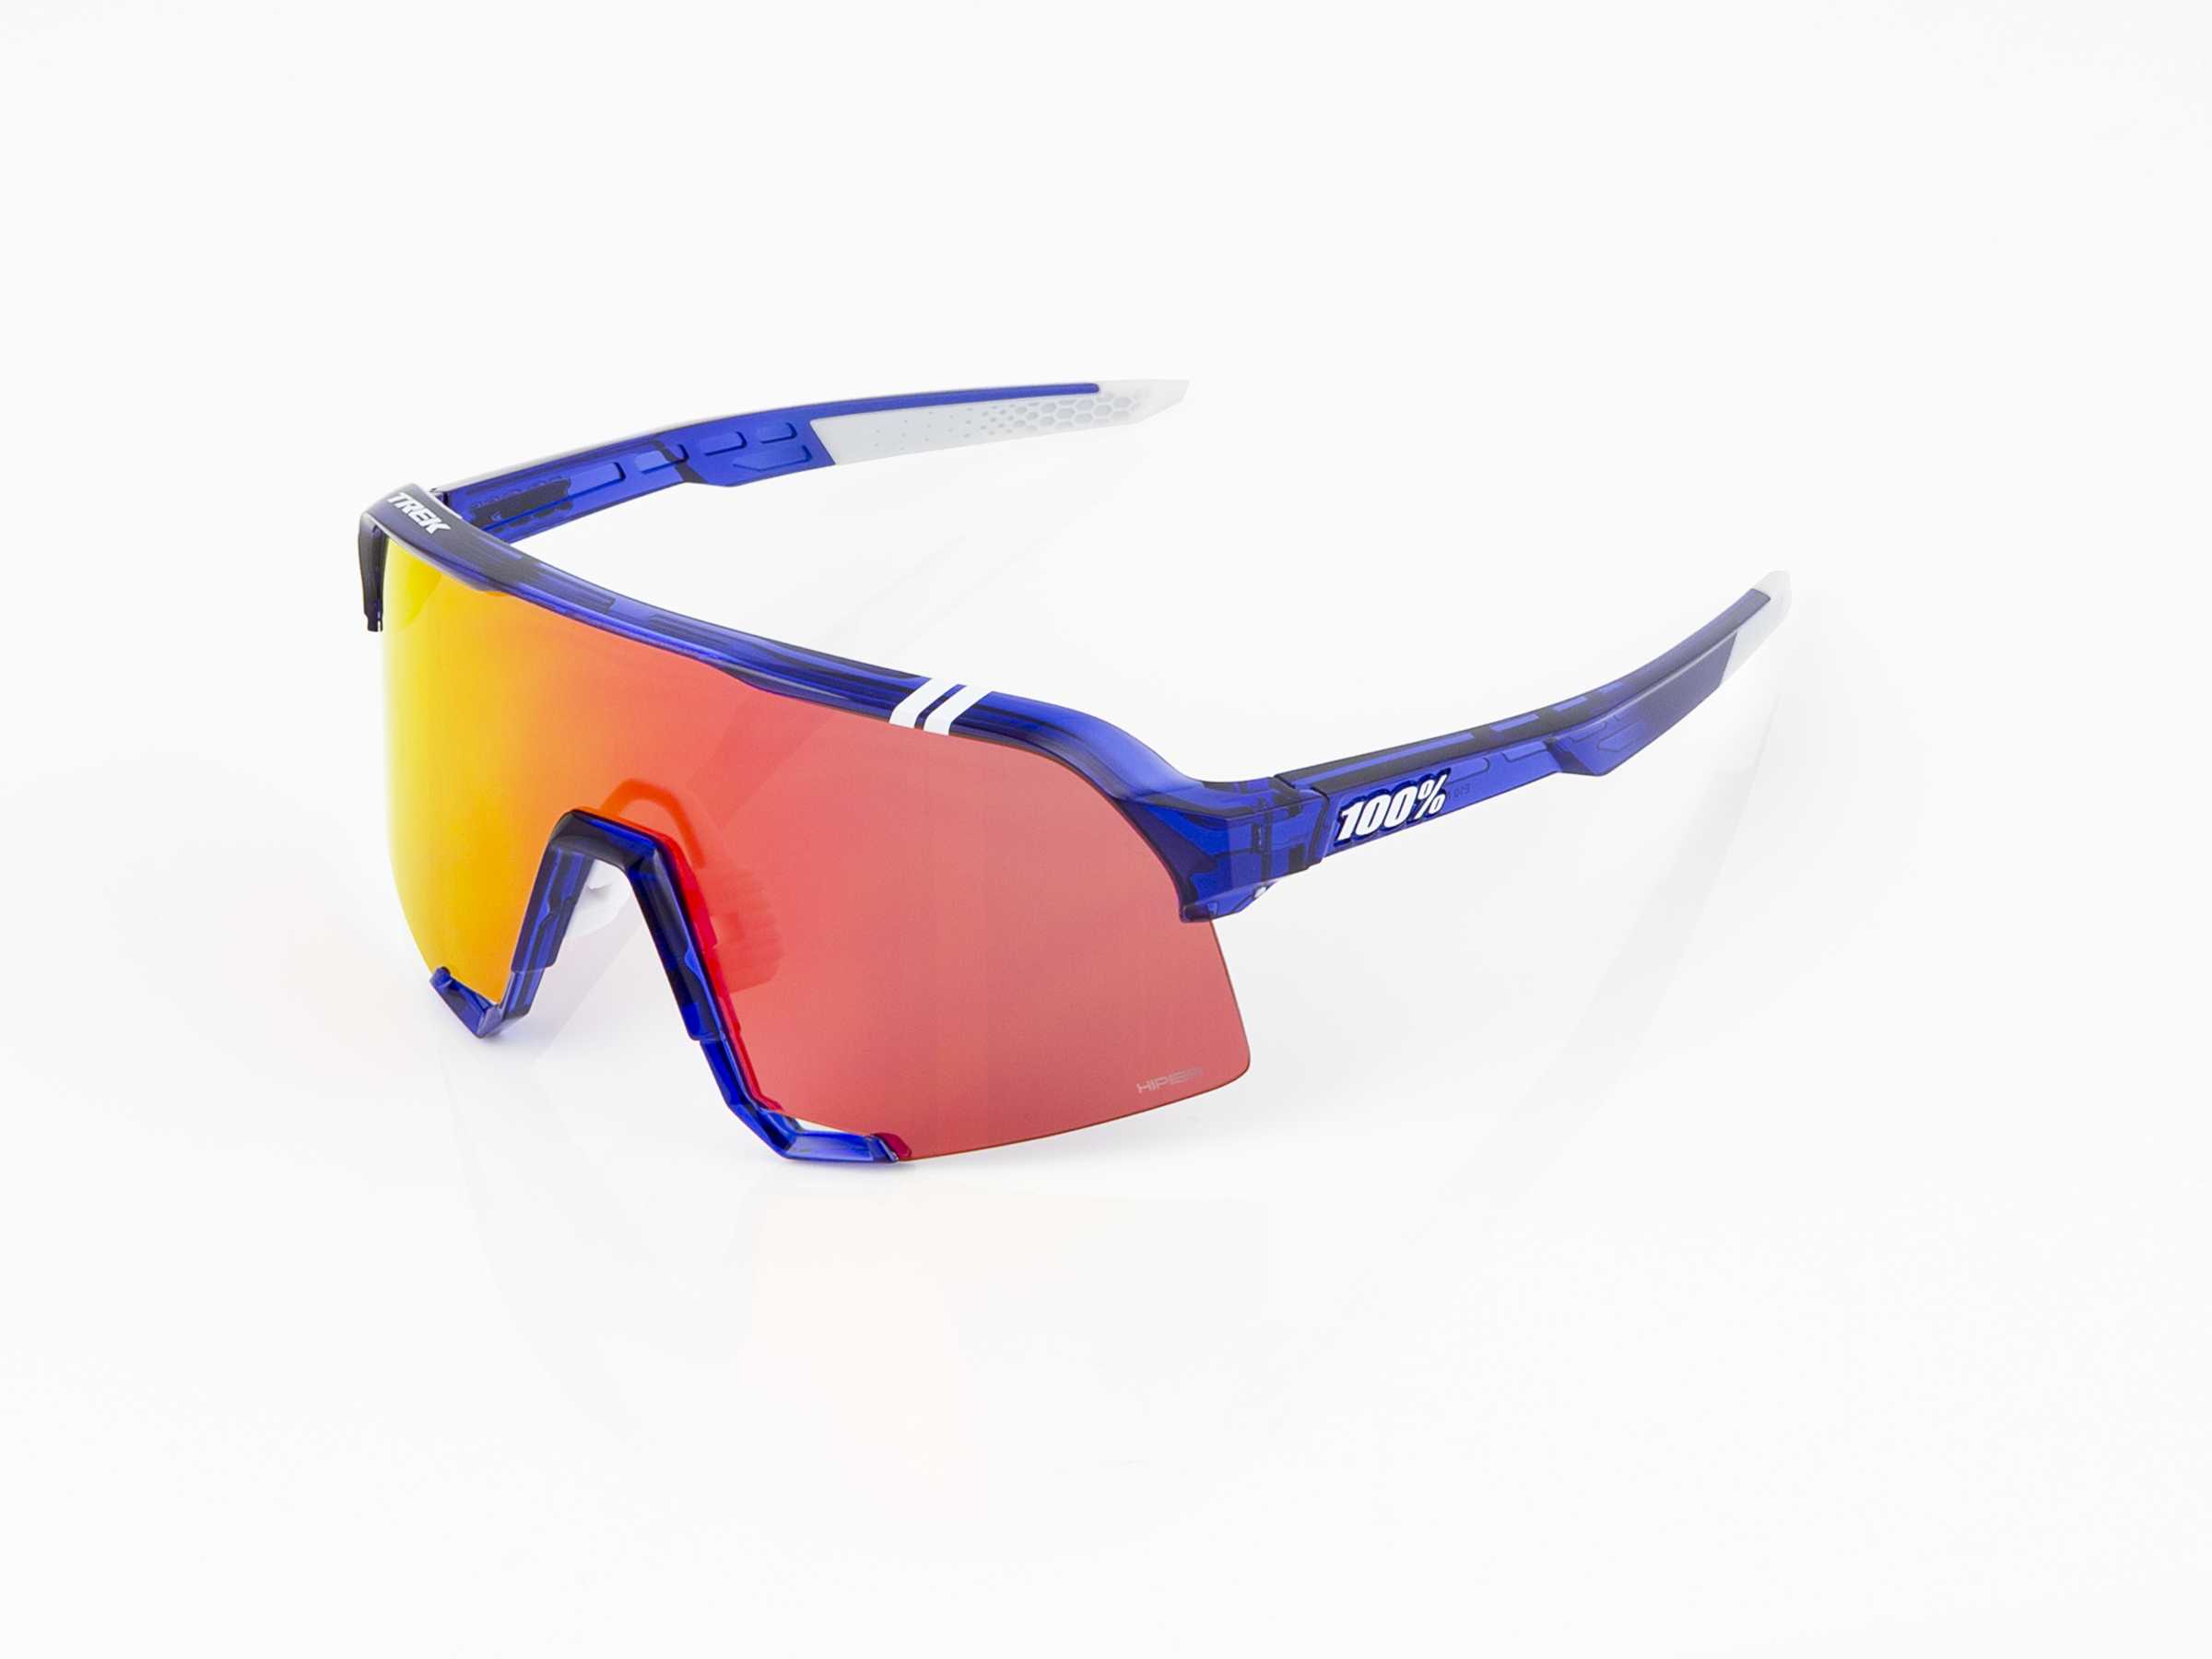 Sluneční brýle 100% S3 se skly HiPER, týmová edice Trek MODRÁ/ČERVENÁ One size